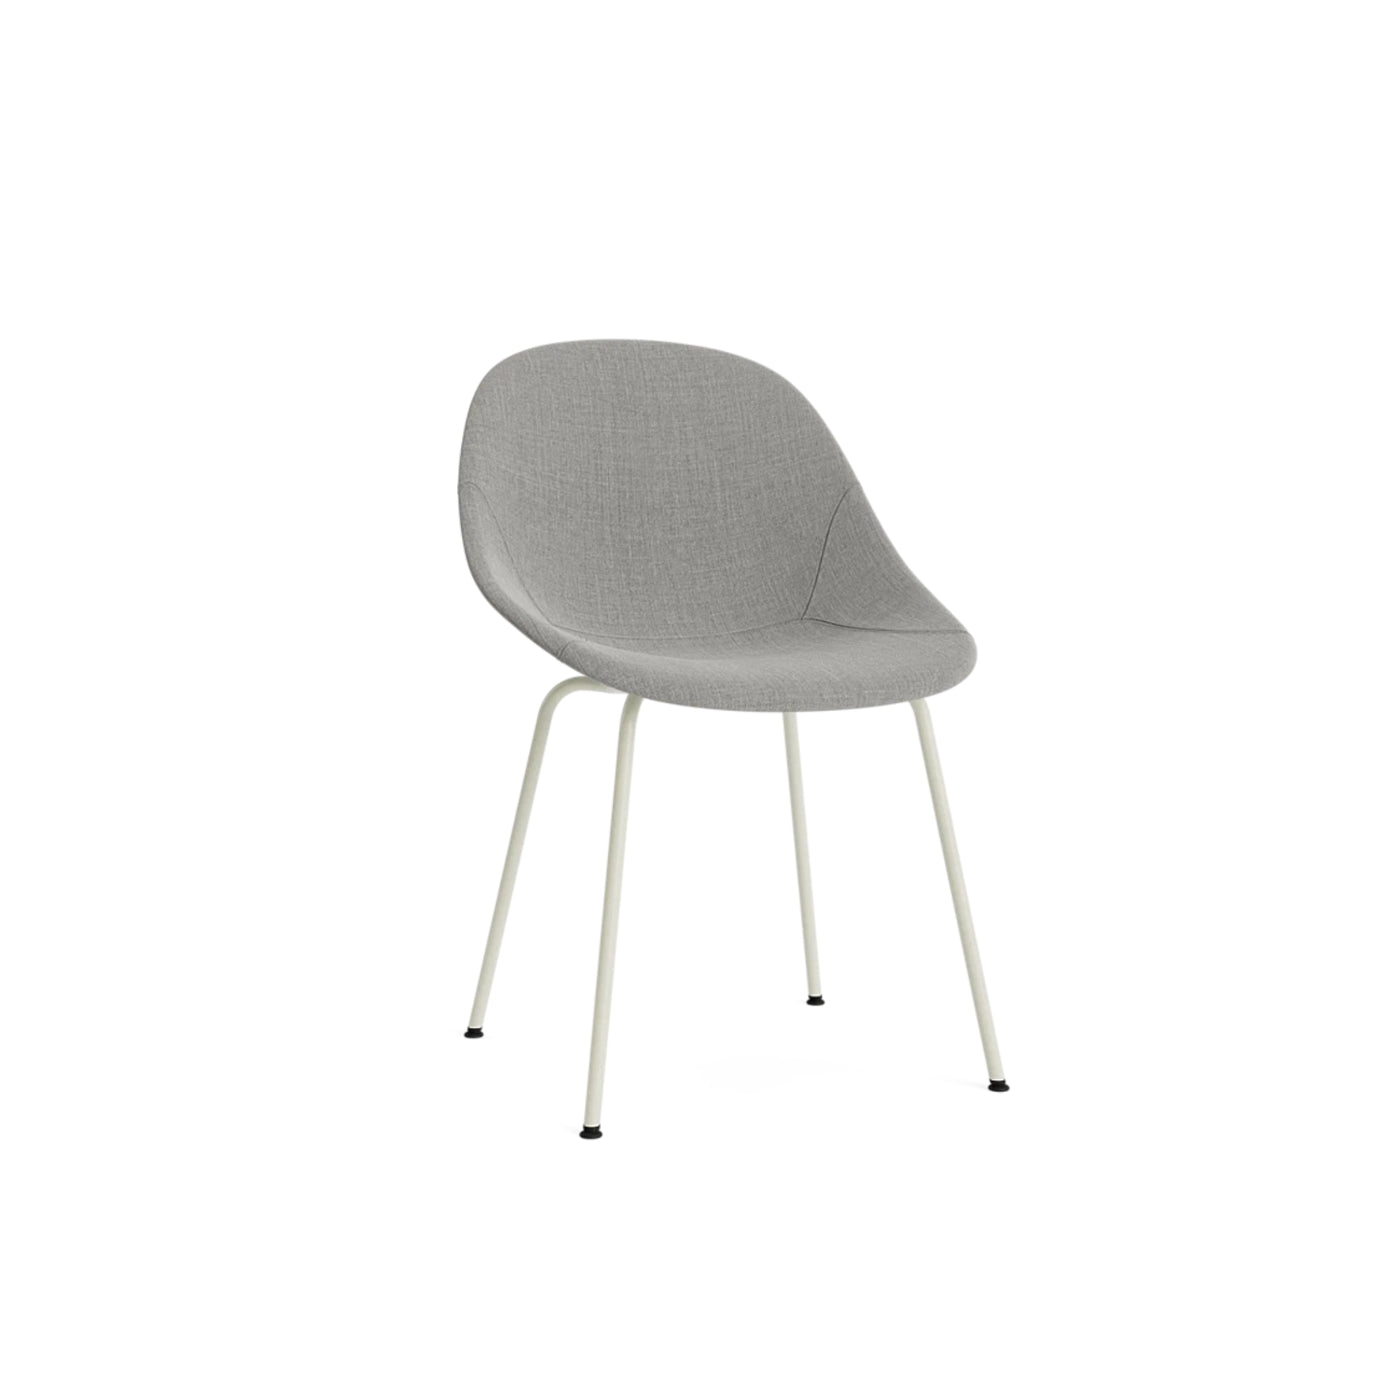 Normann Copenhagen Mat Chair at someday designs. #colour_remix-133